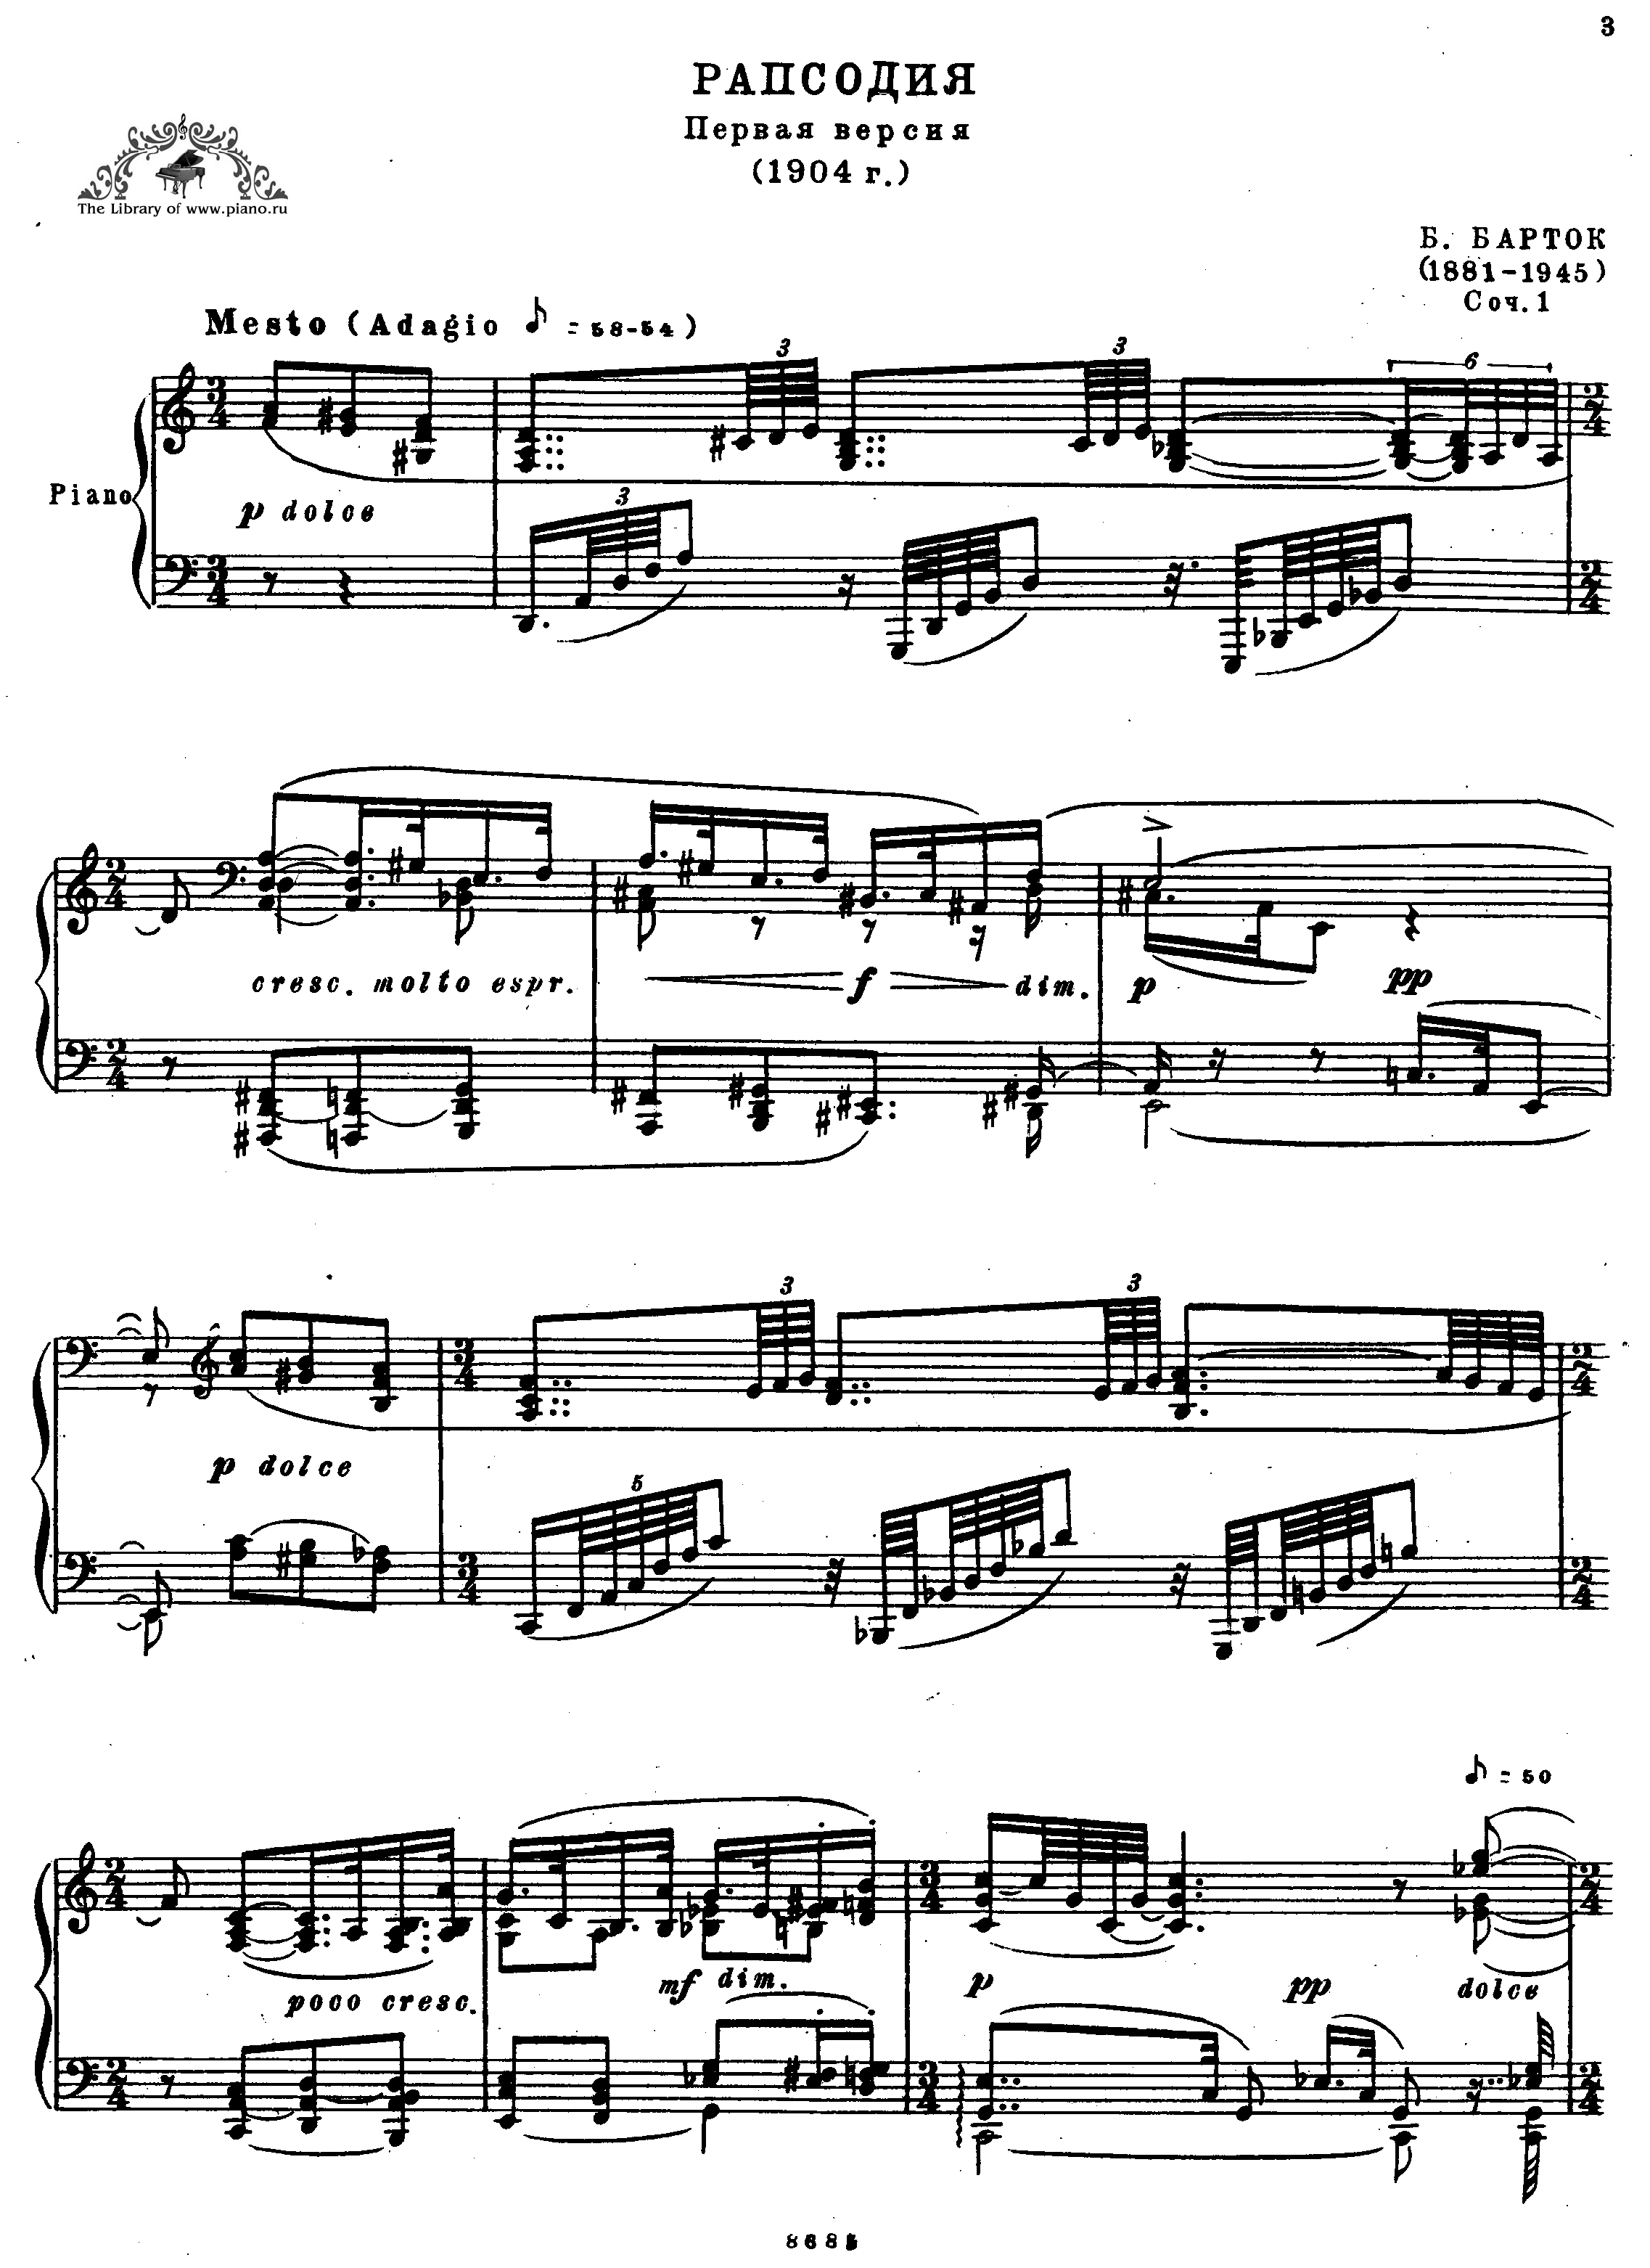 Rhapsody Op.1 Score